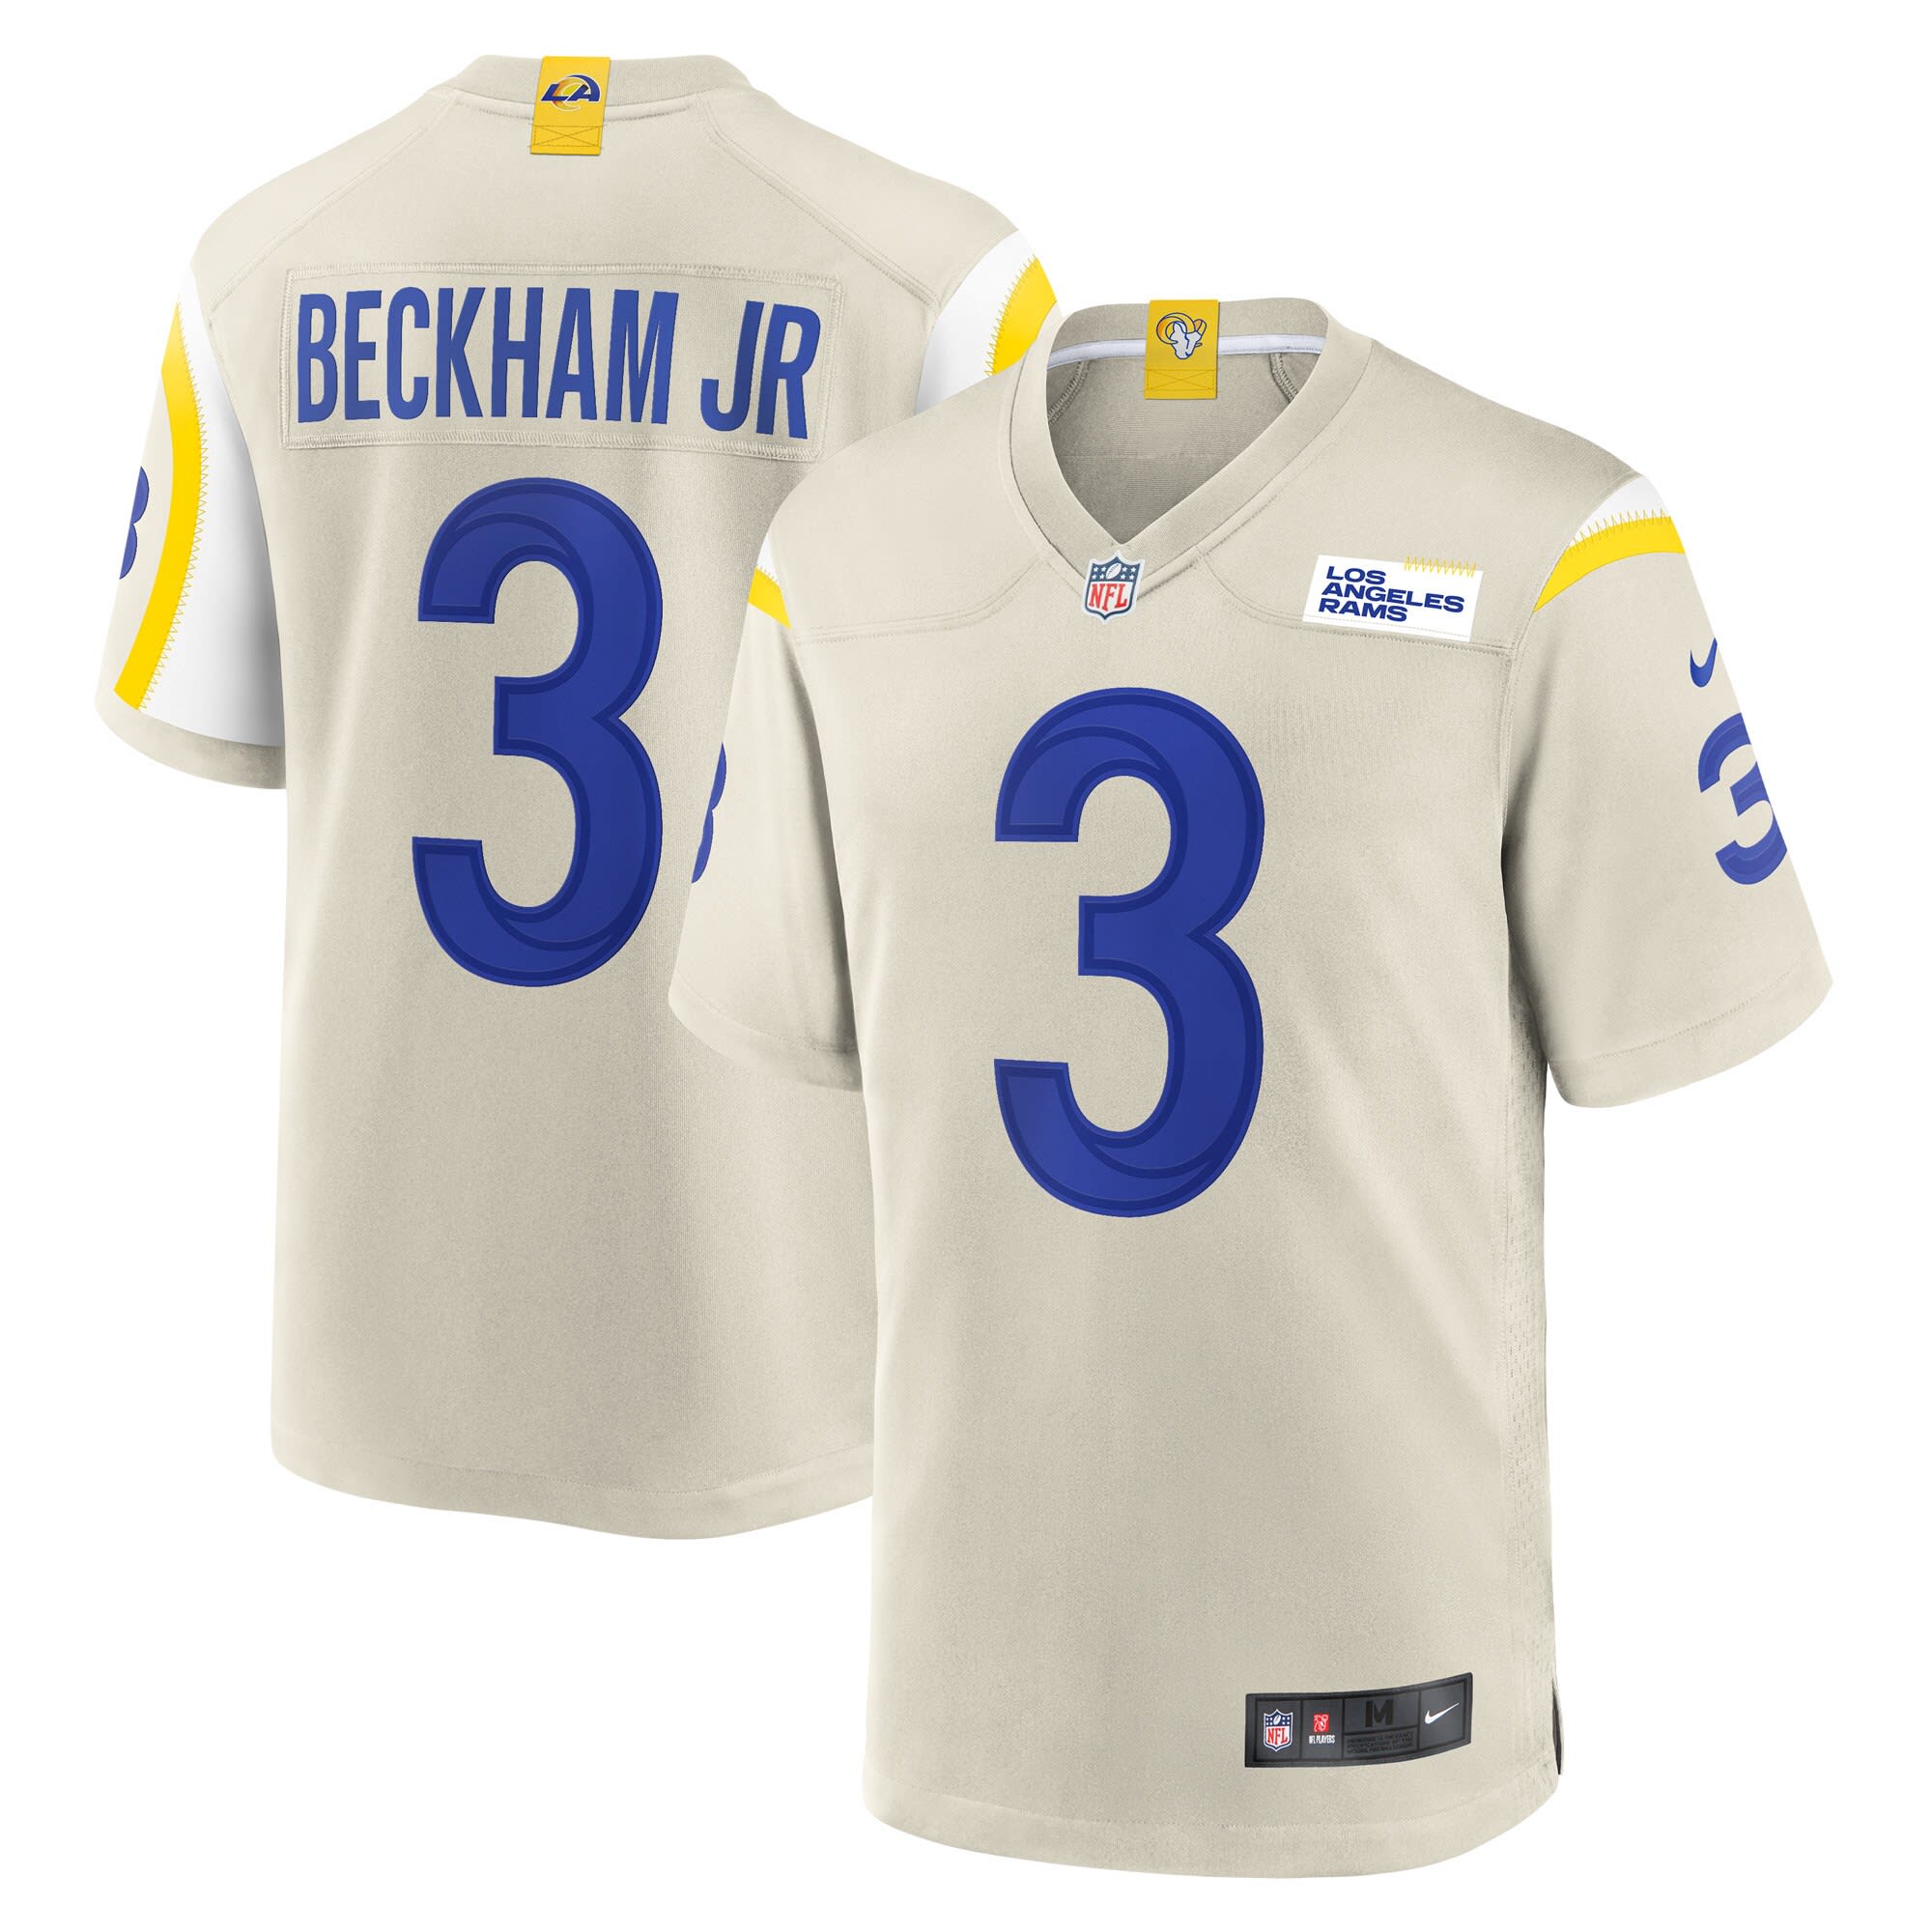 beckham jr shirt